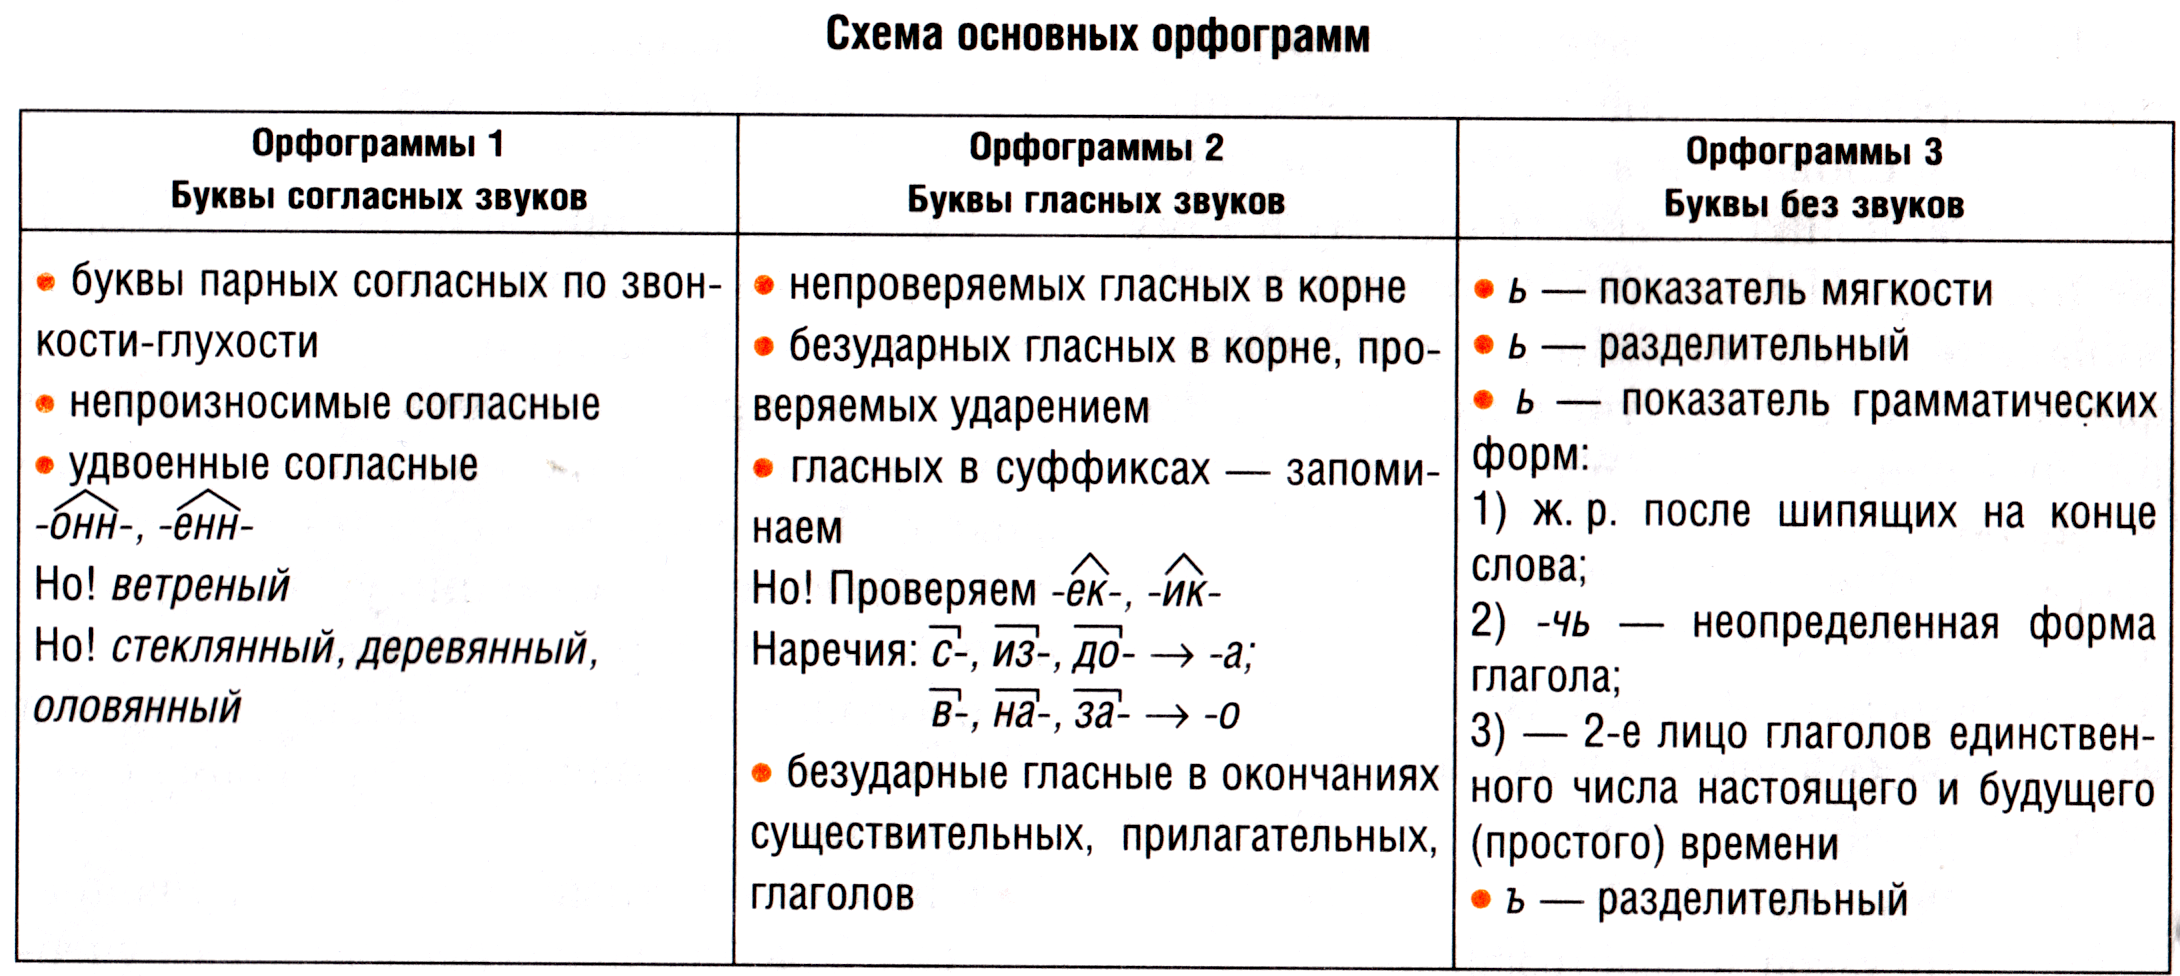 Русский язык: орфограммы. все орфограммы русского языка